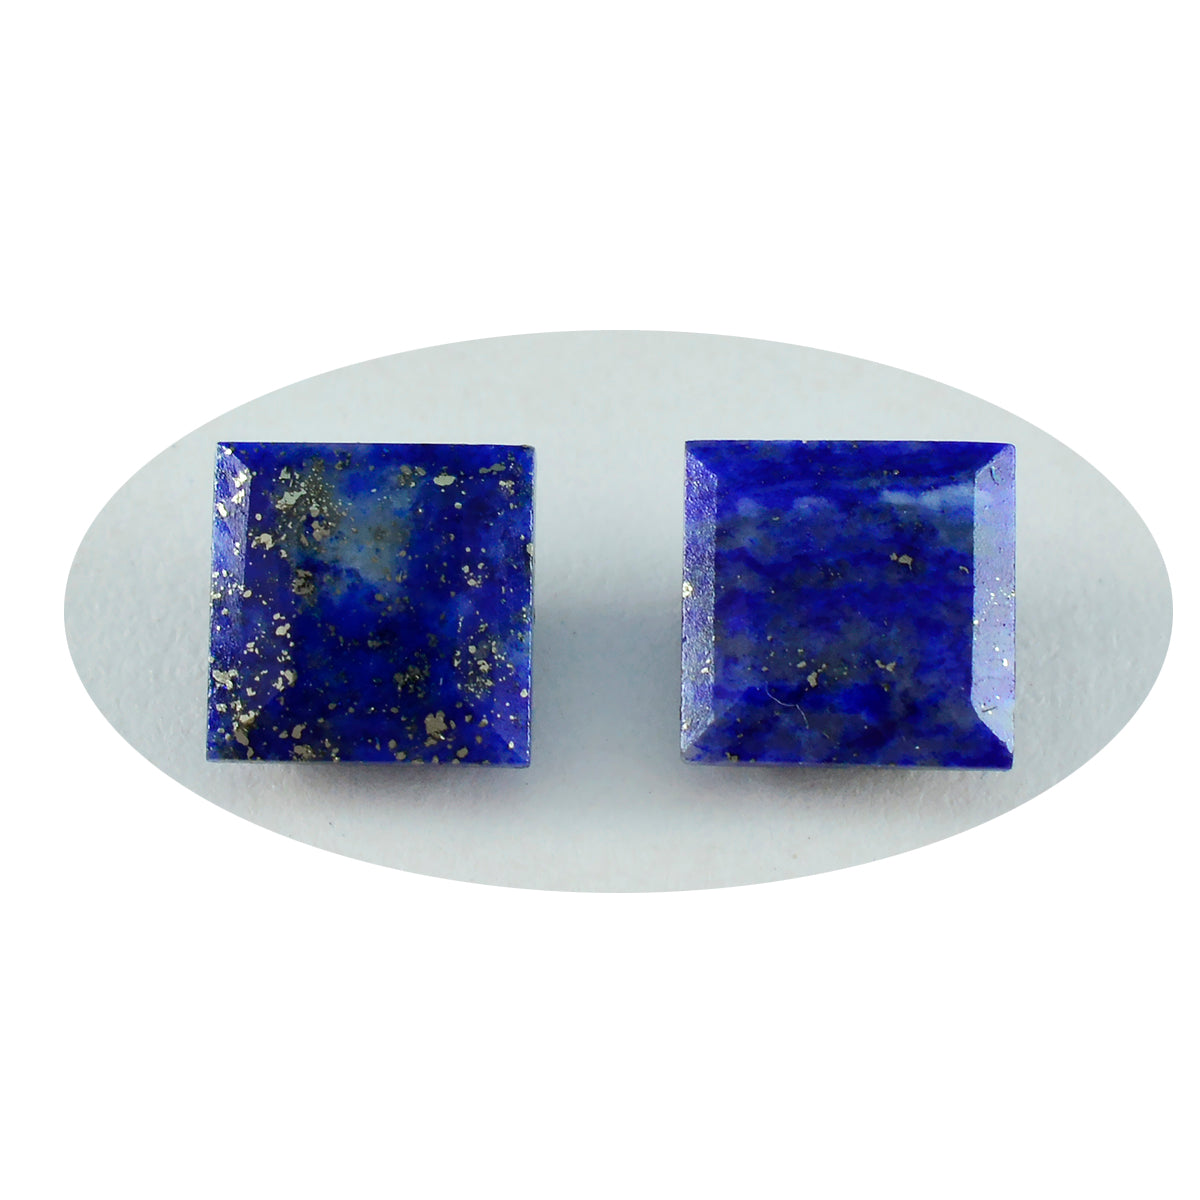 riyogems 1 шт. натуральный синий лазурит ограненный 11x11 мм квадратной формы красивые качественные свободные драгоценные камни